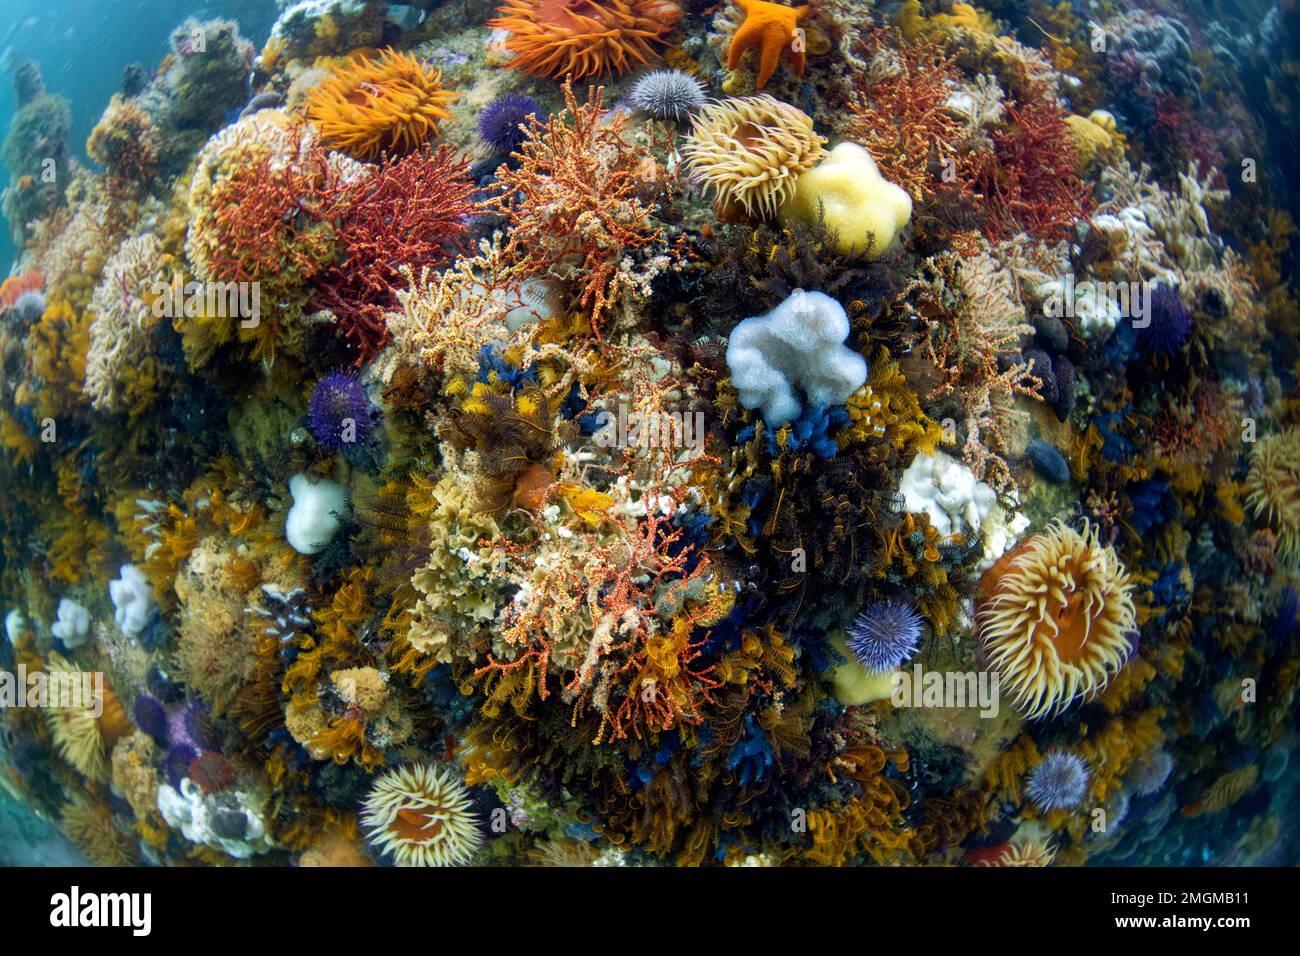 underwater atmosphere - Cap of good hope - south africa - atlantic ocean Stock Photo